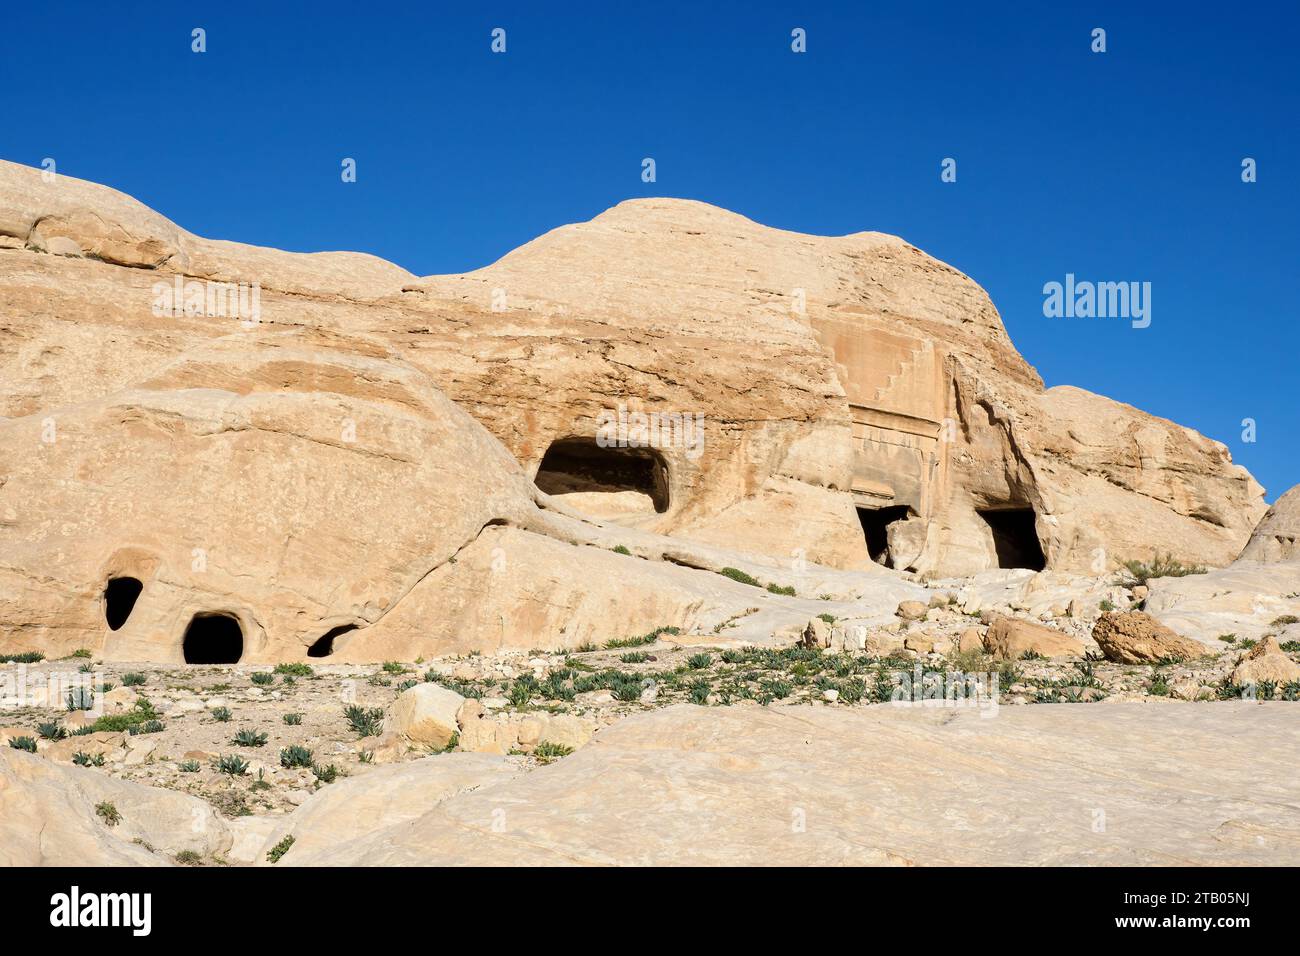 Grotte di pietra nel parco archeologico di Petra, patrimonio dell'umanità dell'UNESCO, le nuove 7 meraviglie del mondo, Giordania. Foto Stock